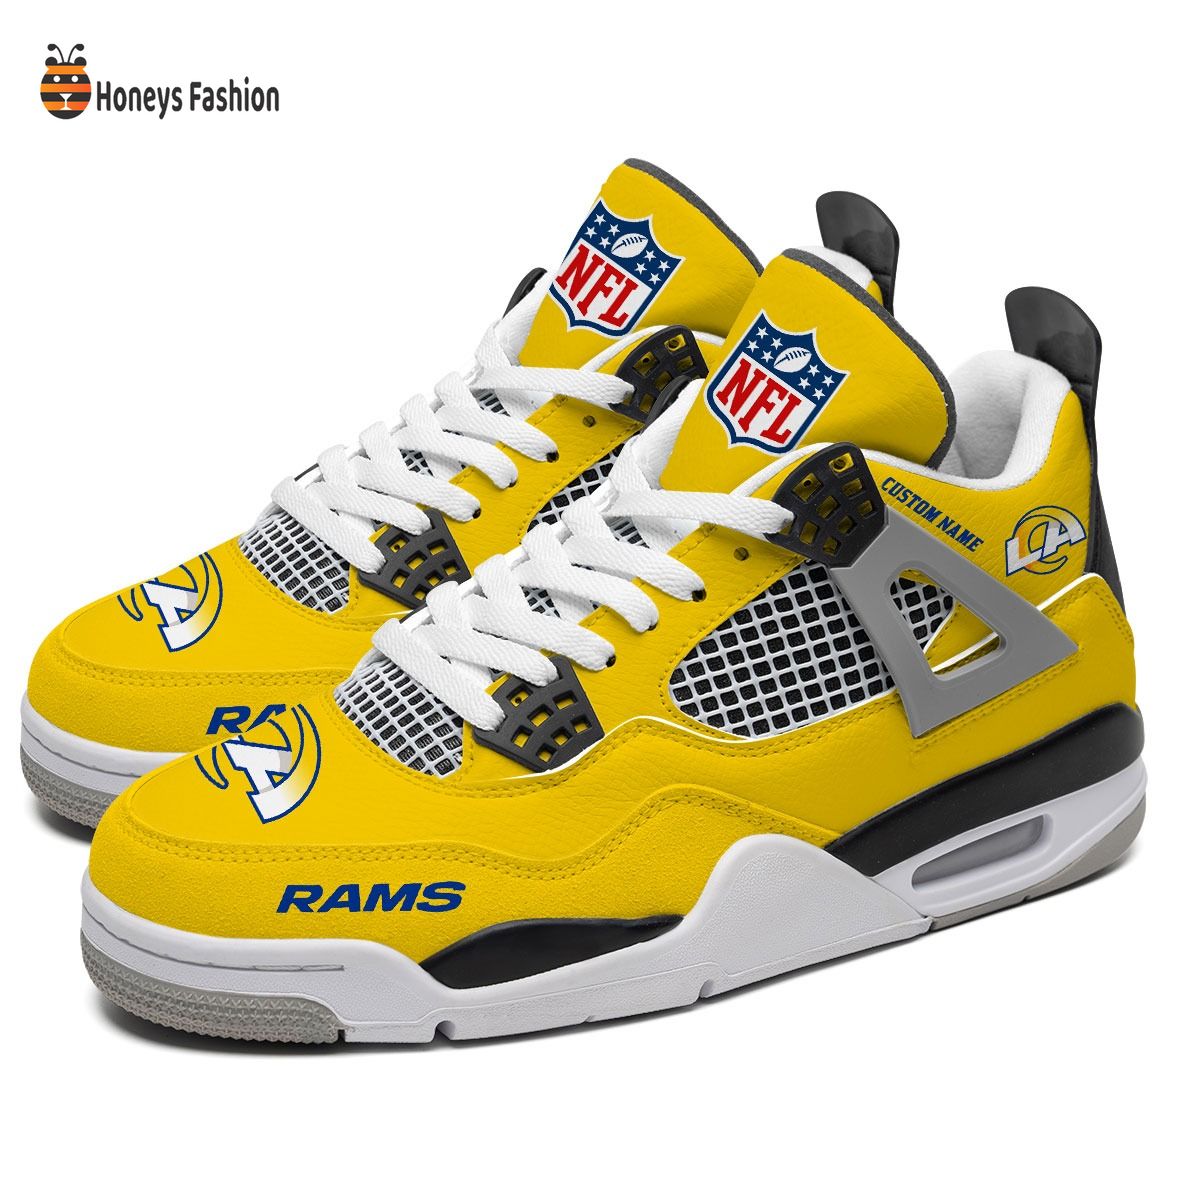 Los Angeles Rams NFL Air Jordan 4 Shoes